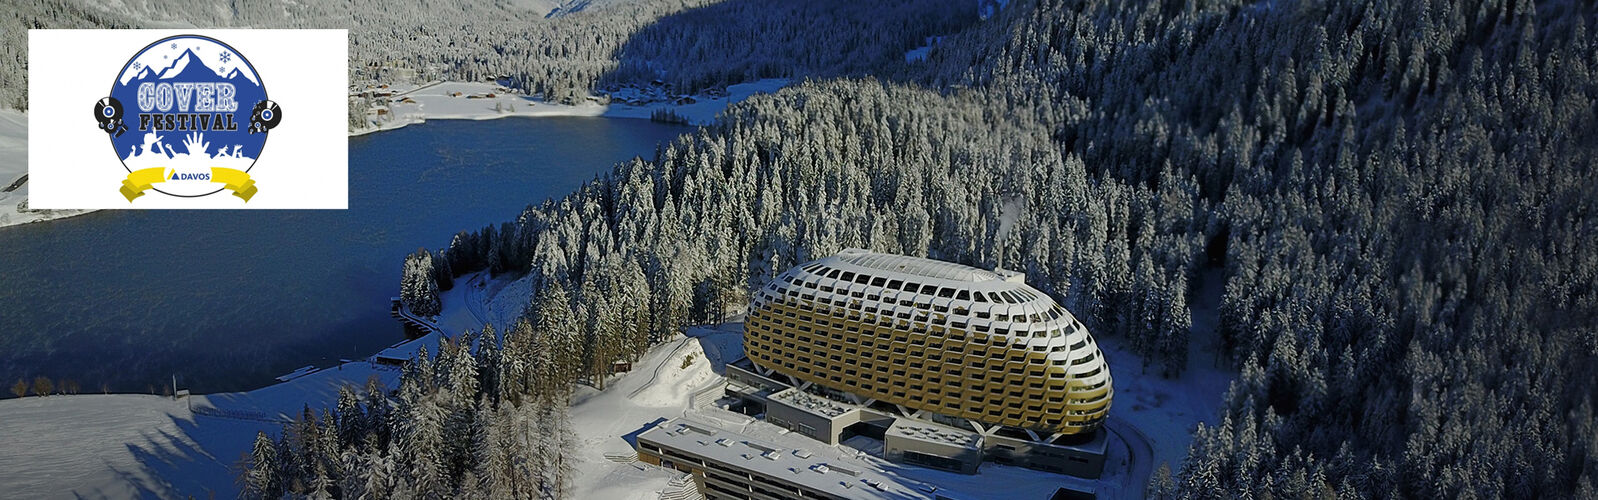 Gewinnen Sie ein verlängertes Wochenende am «Coverfestival Davos»!